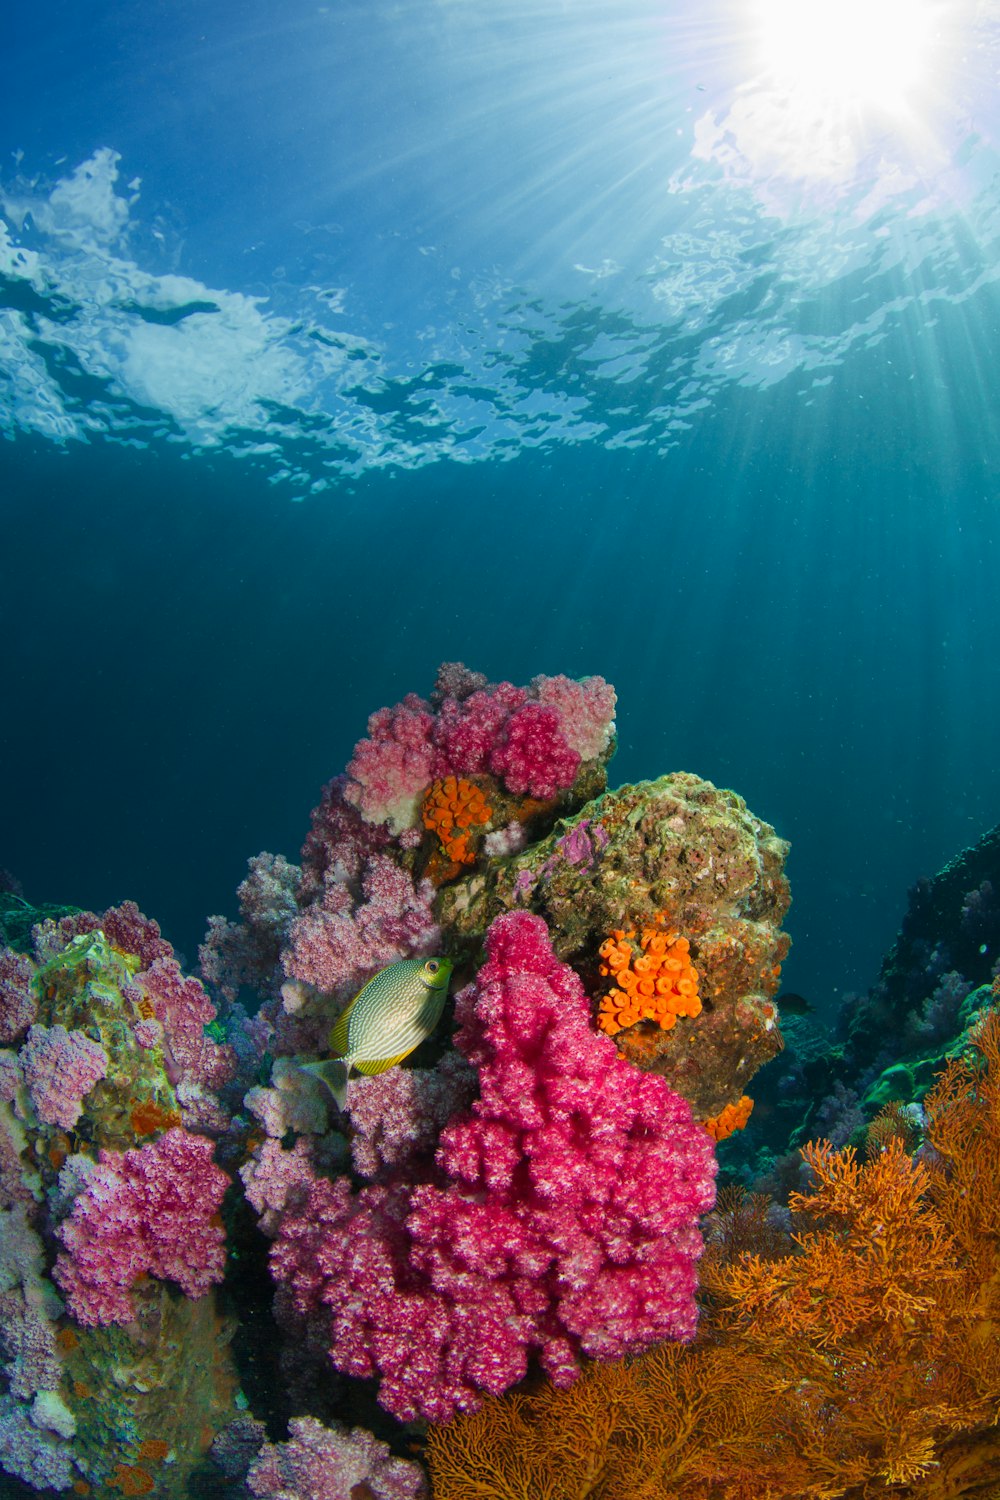 pesci marroni accanto al corallo sotto lo specchio d'acqua